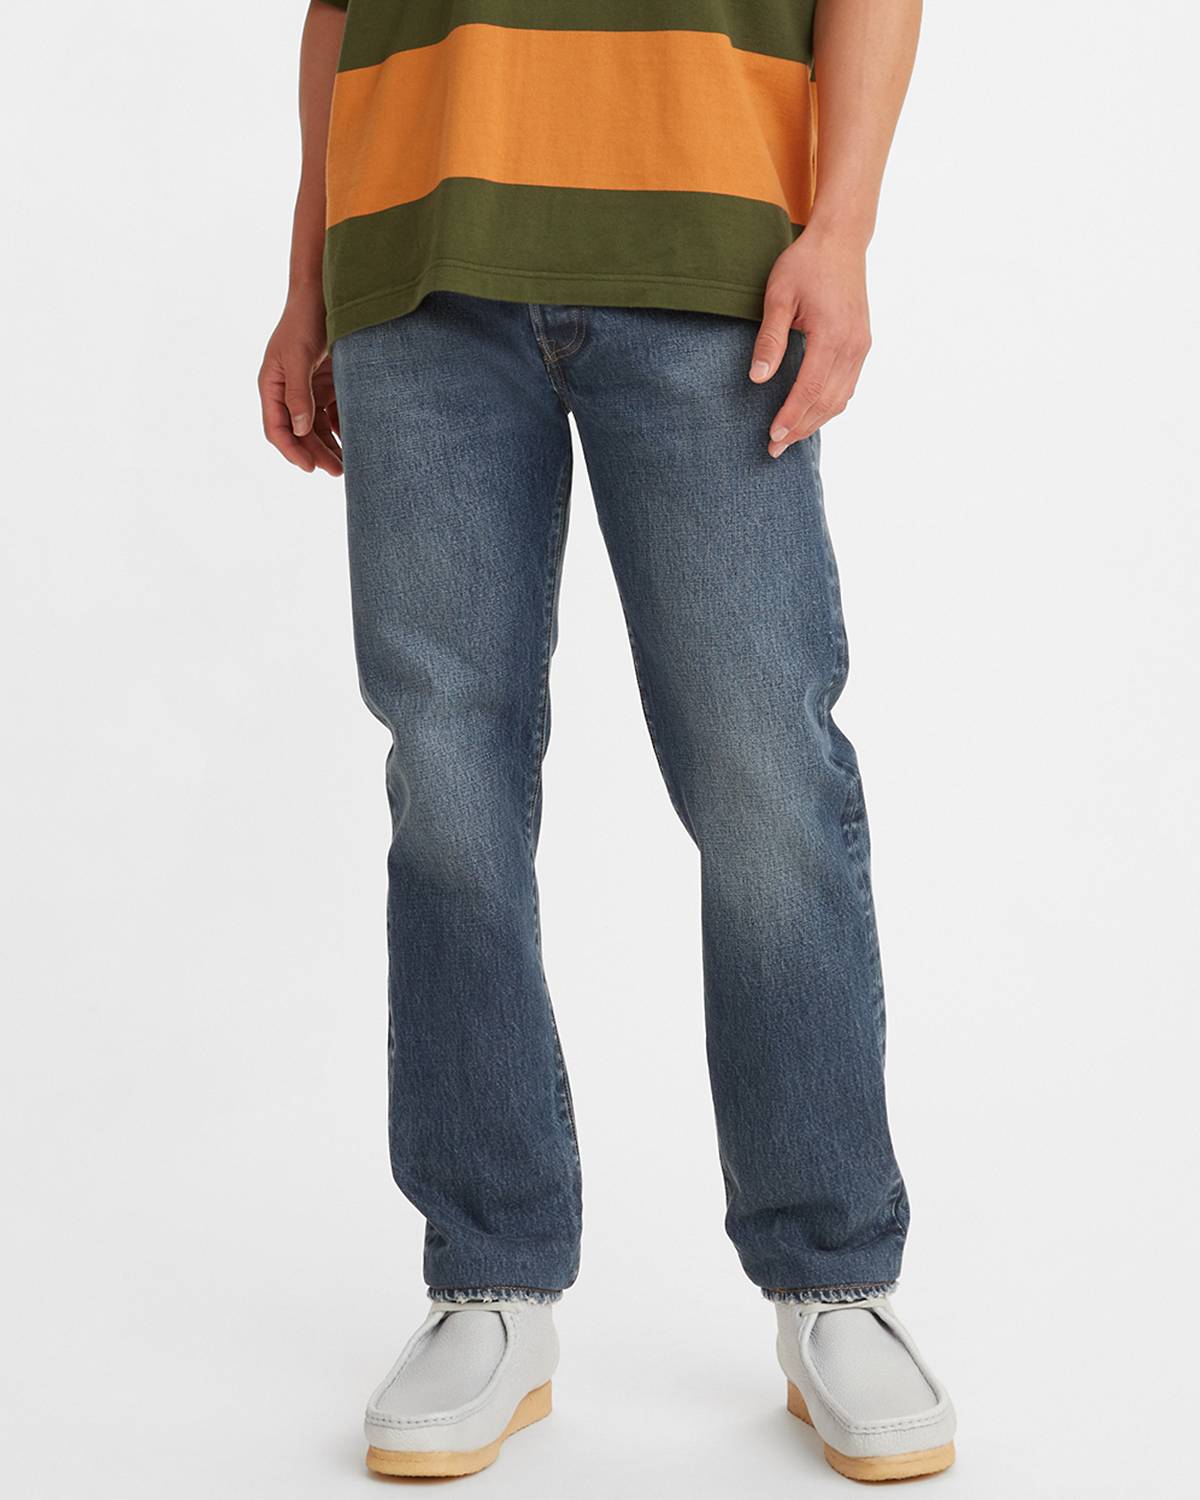 Model wearing 501® Slim Taper jeans